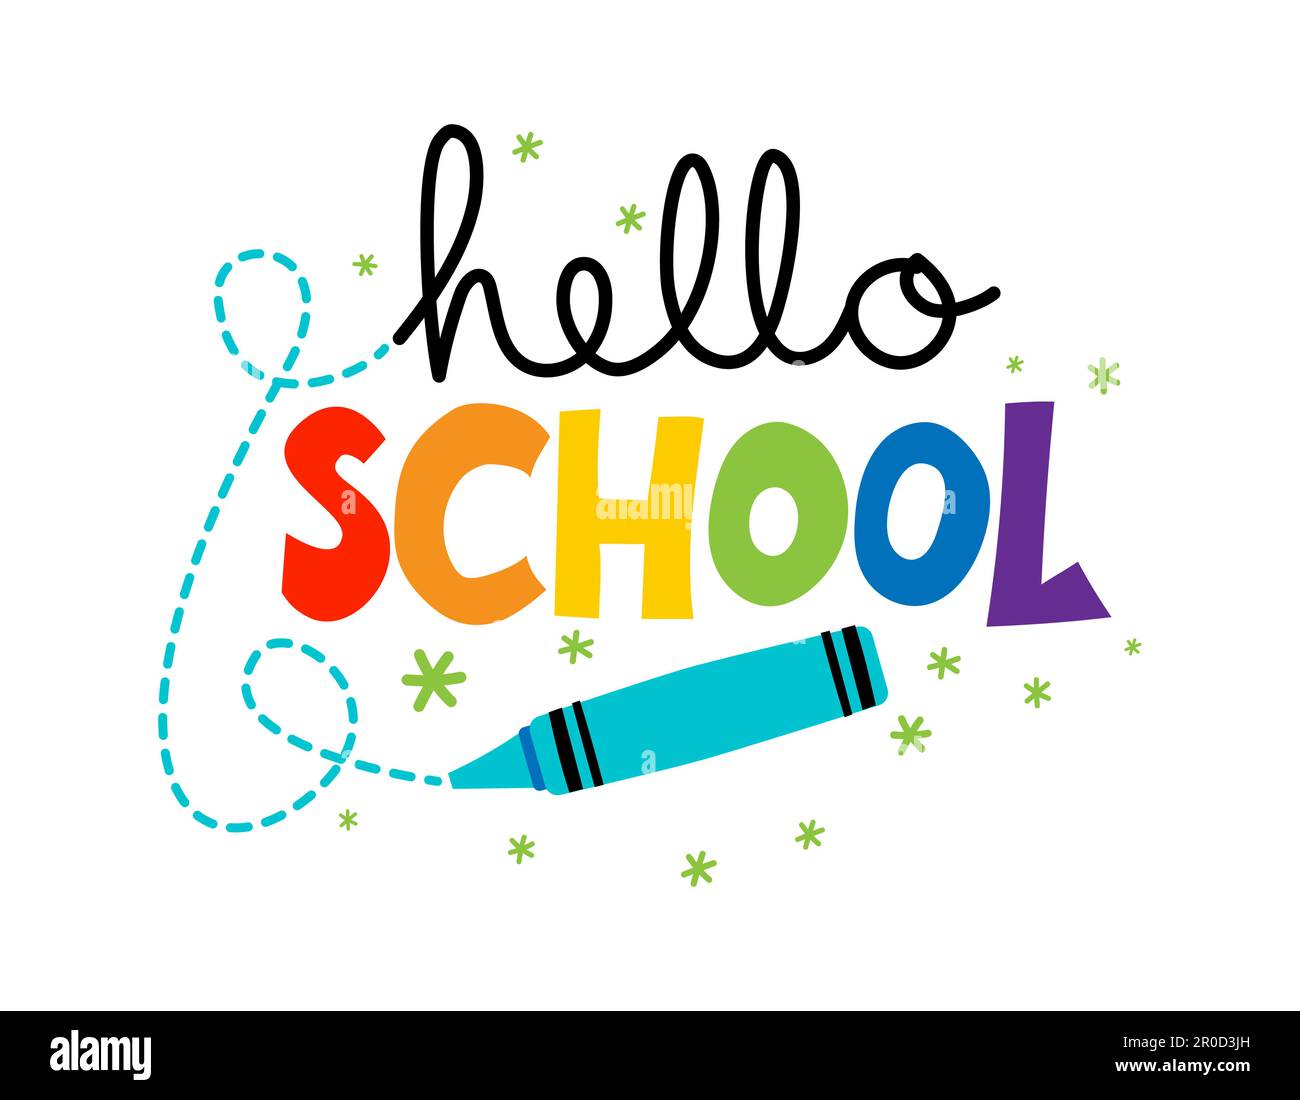 Hello School avec crayon coloré pour enfants - conception typographique. Idéal pour les vêtements, les ensembles-cadeaux, les photos ou les affiches de motivation. Bienvenue à l'enseigne de retour à l'école Illustration de Vecteur